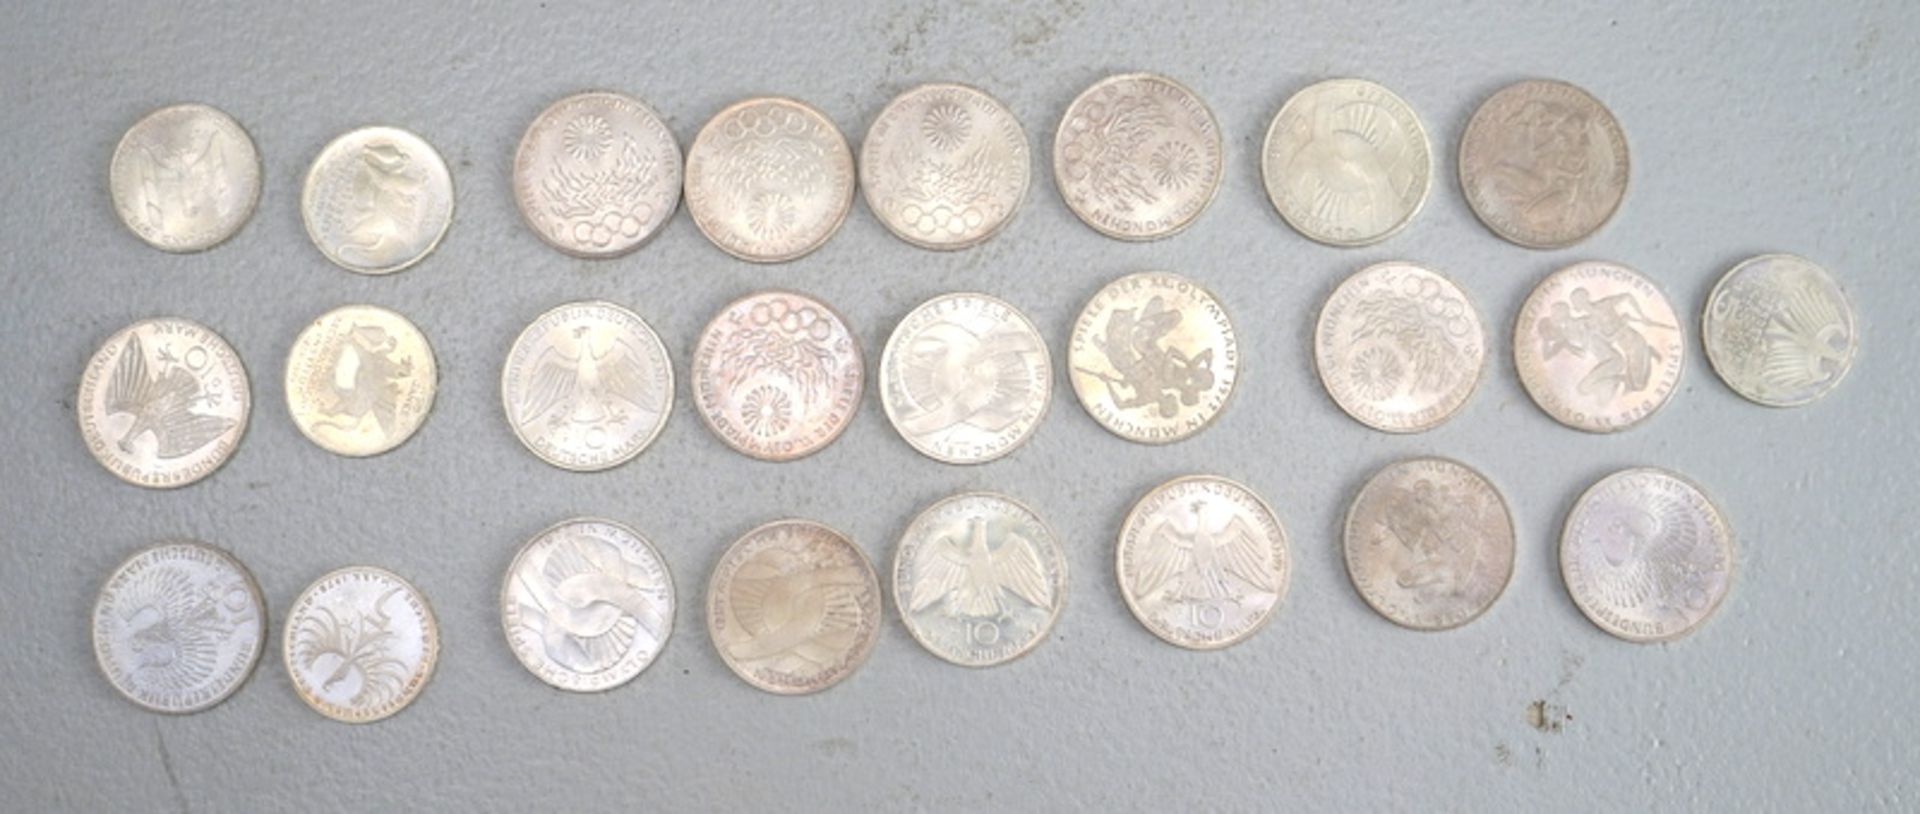 5 u. 10 DM-Gedenkmünzen, Olympische Spiele 1972, 625er Silber